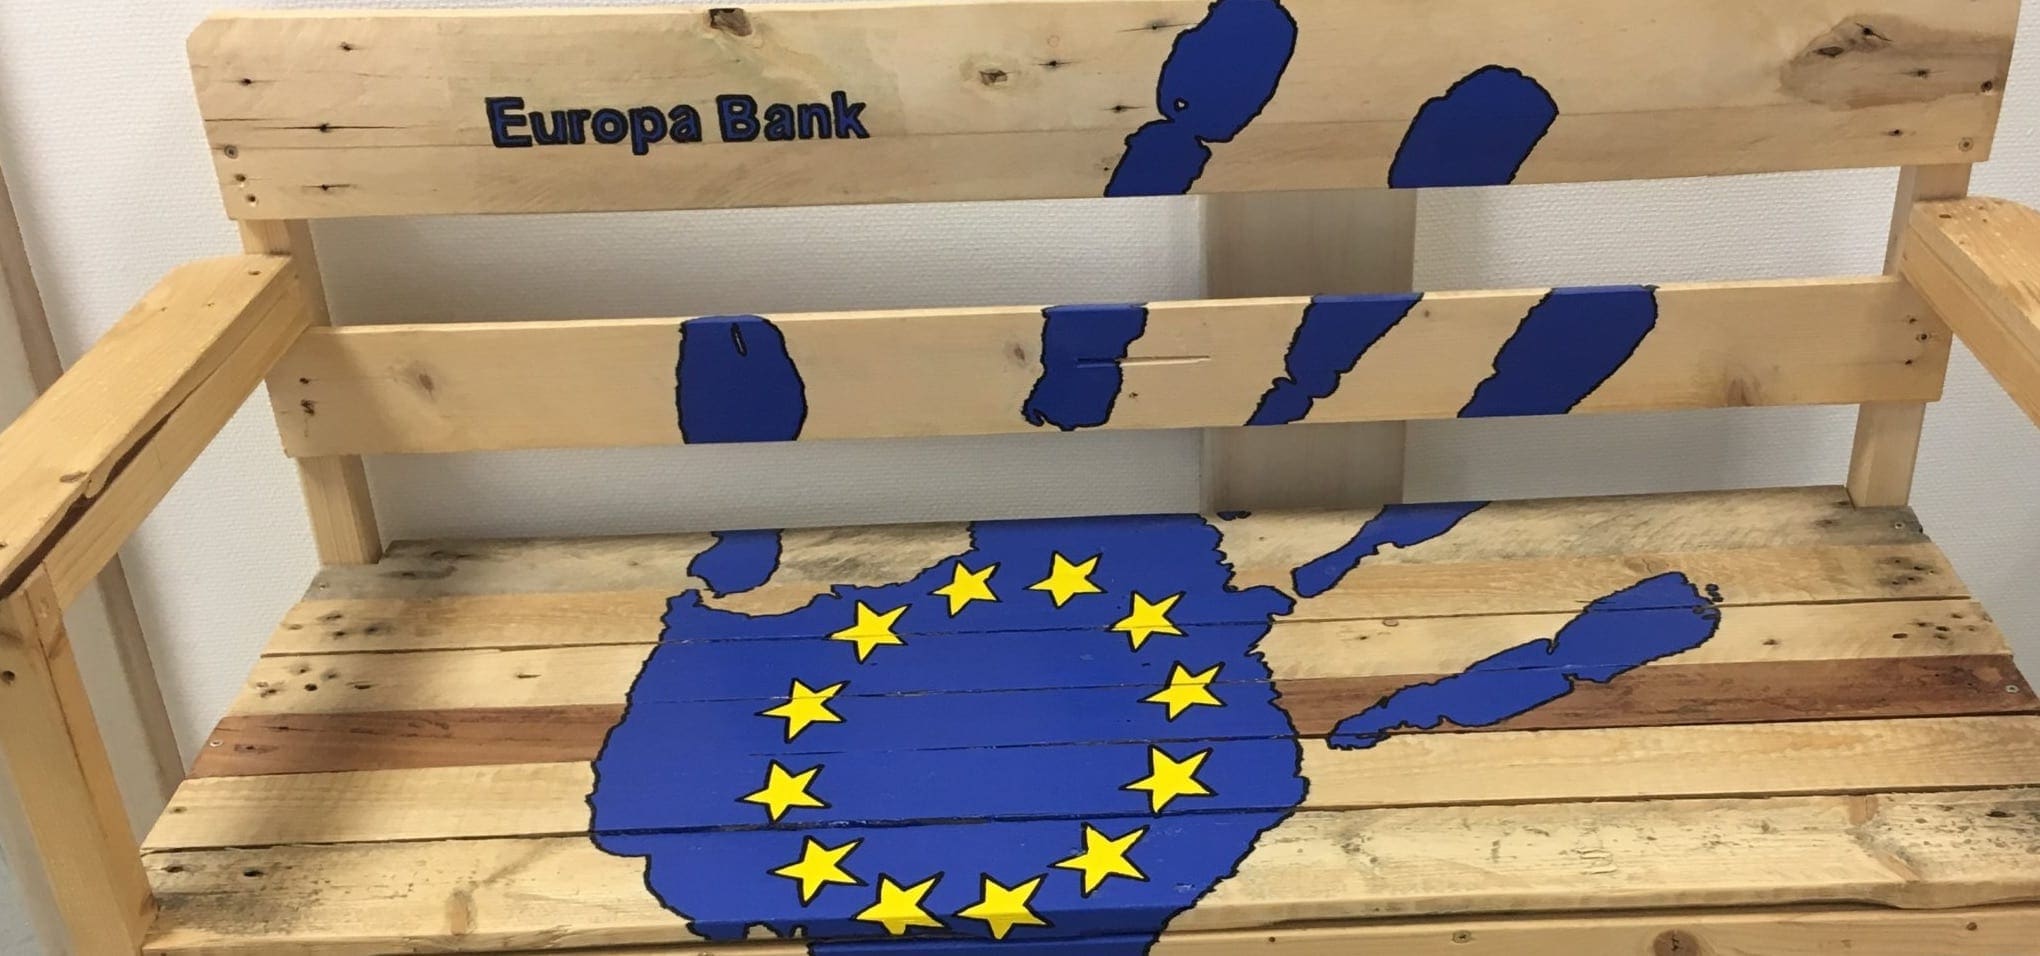 Una dintre cele două bănci euro create de breasla construcțiilor.